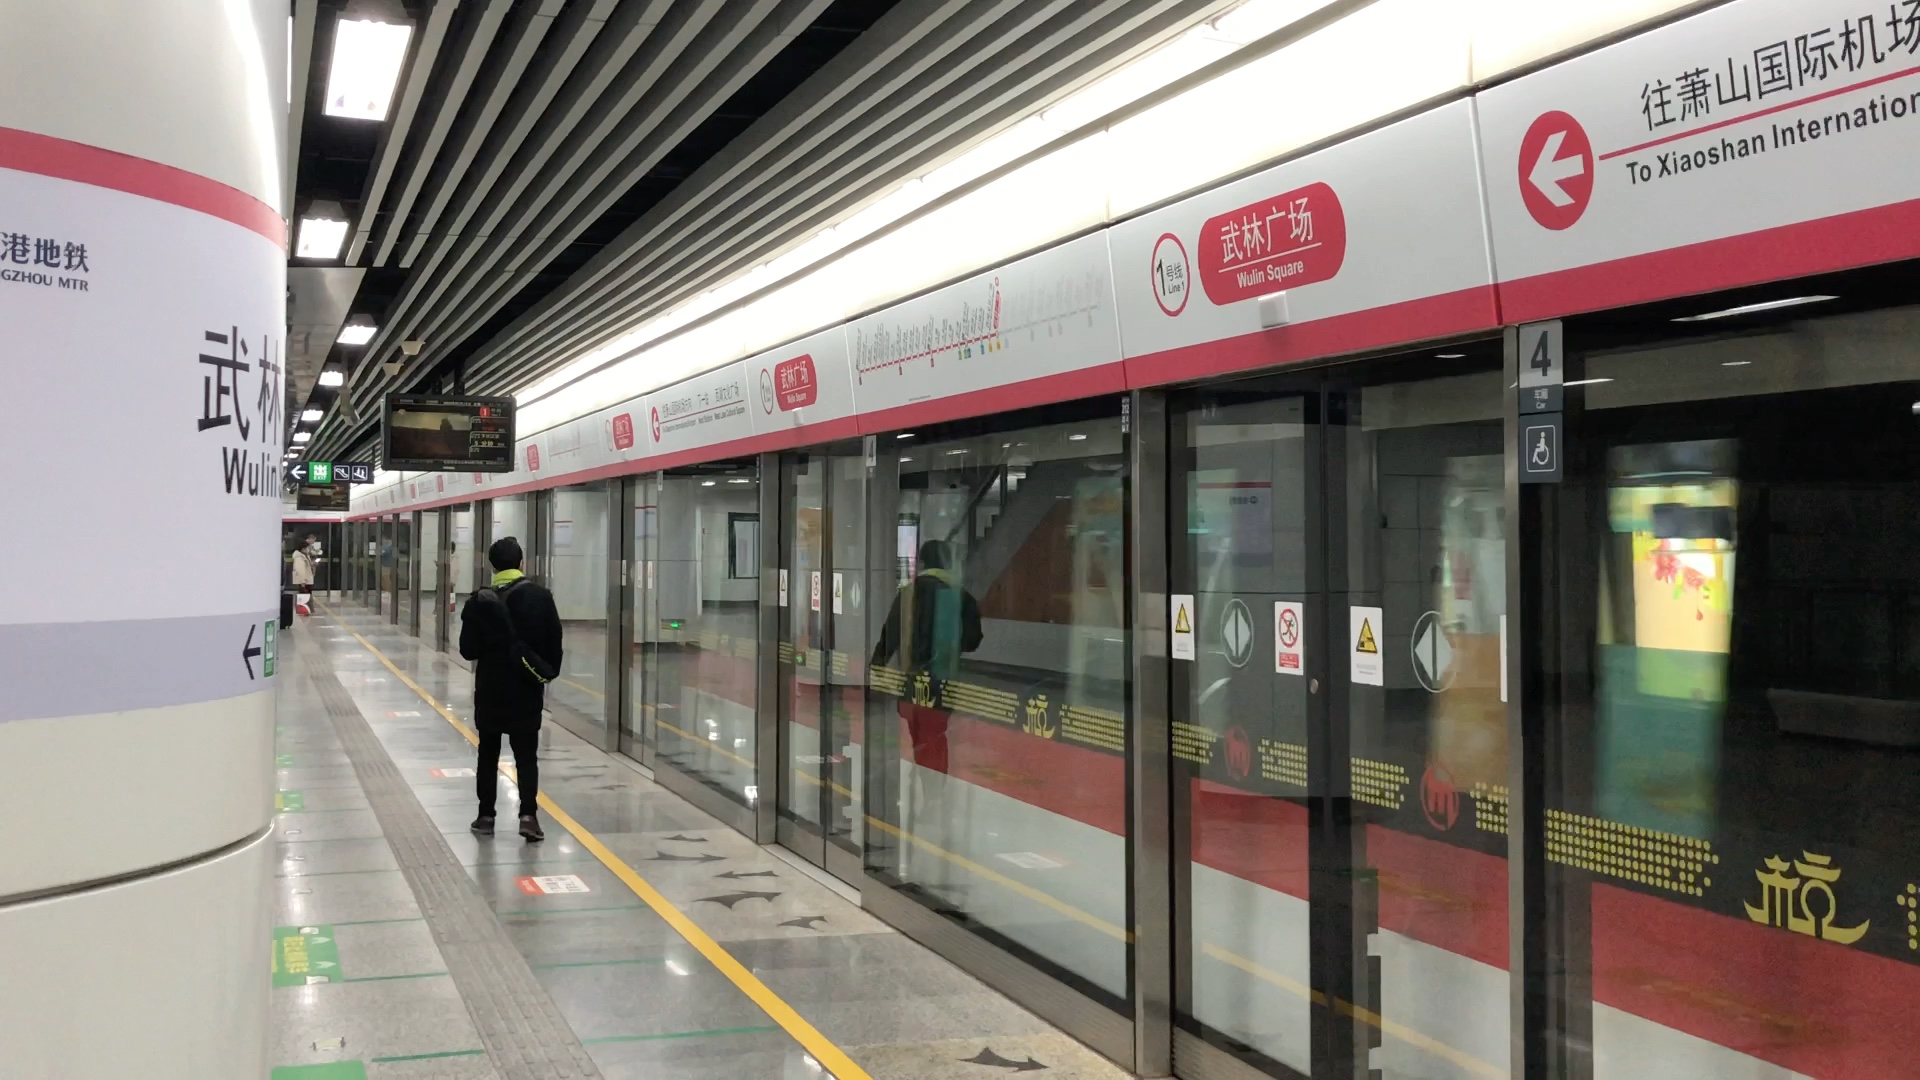 杭州地铁一号线三期图片